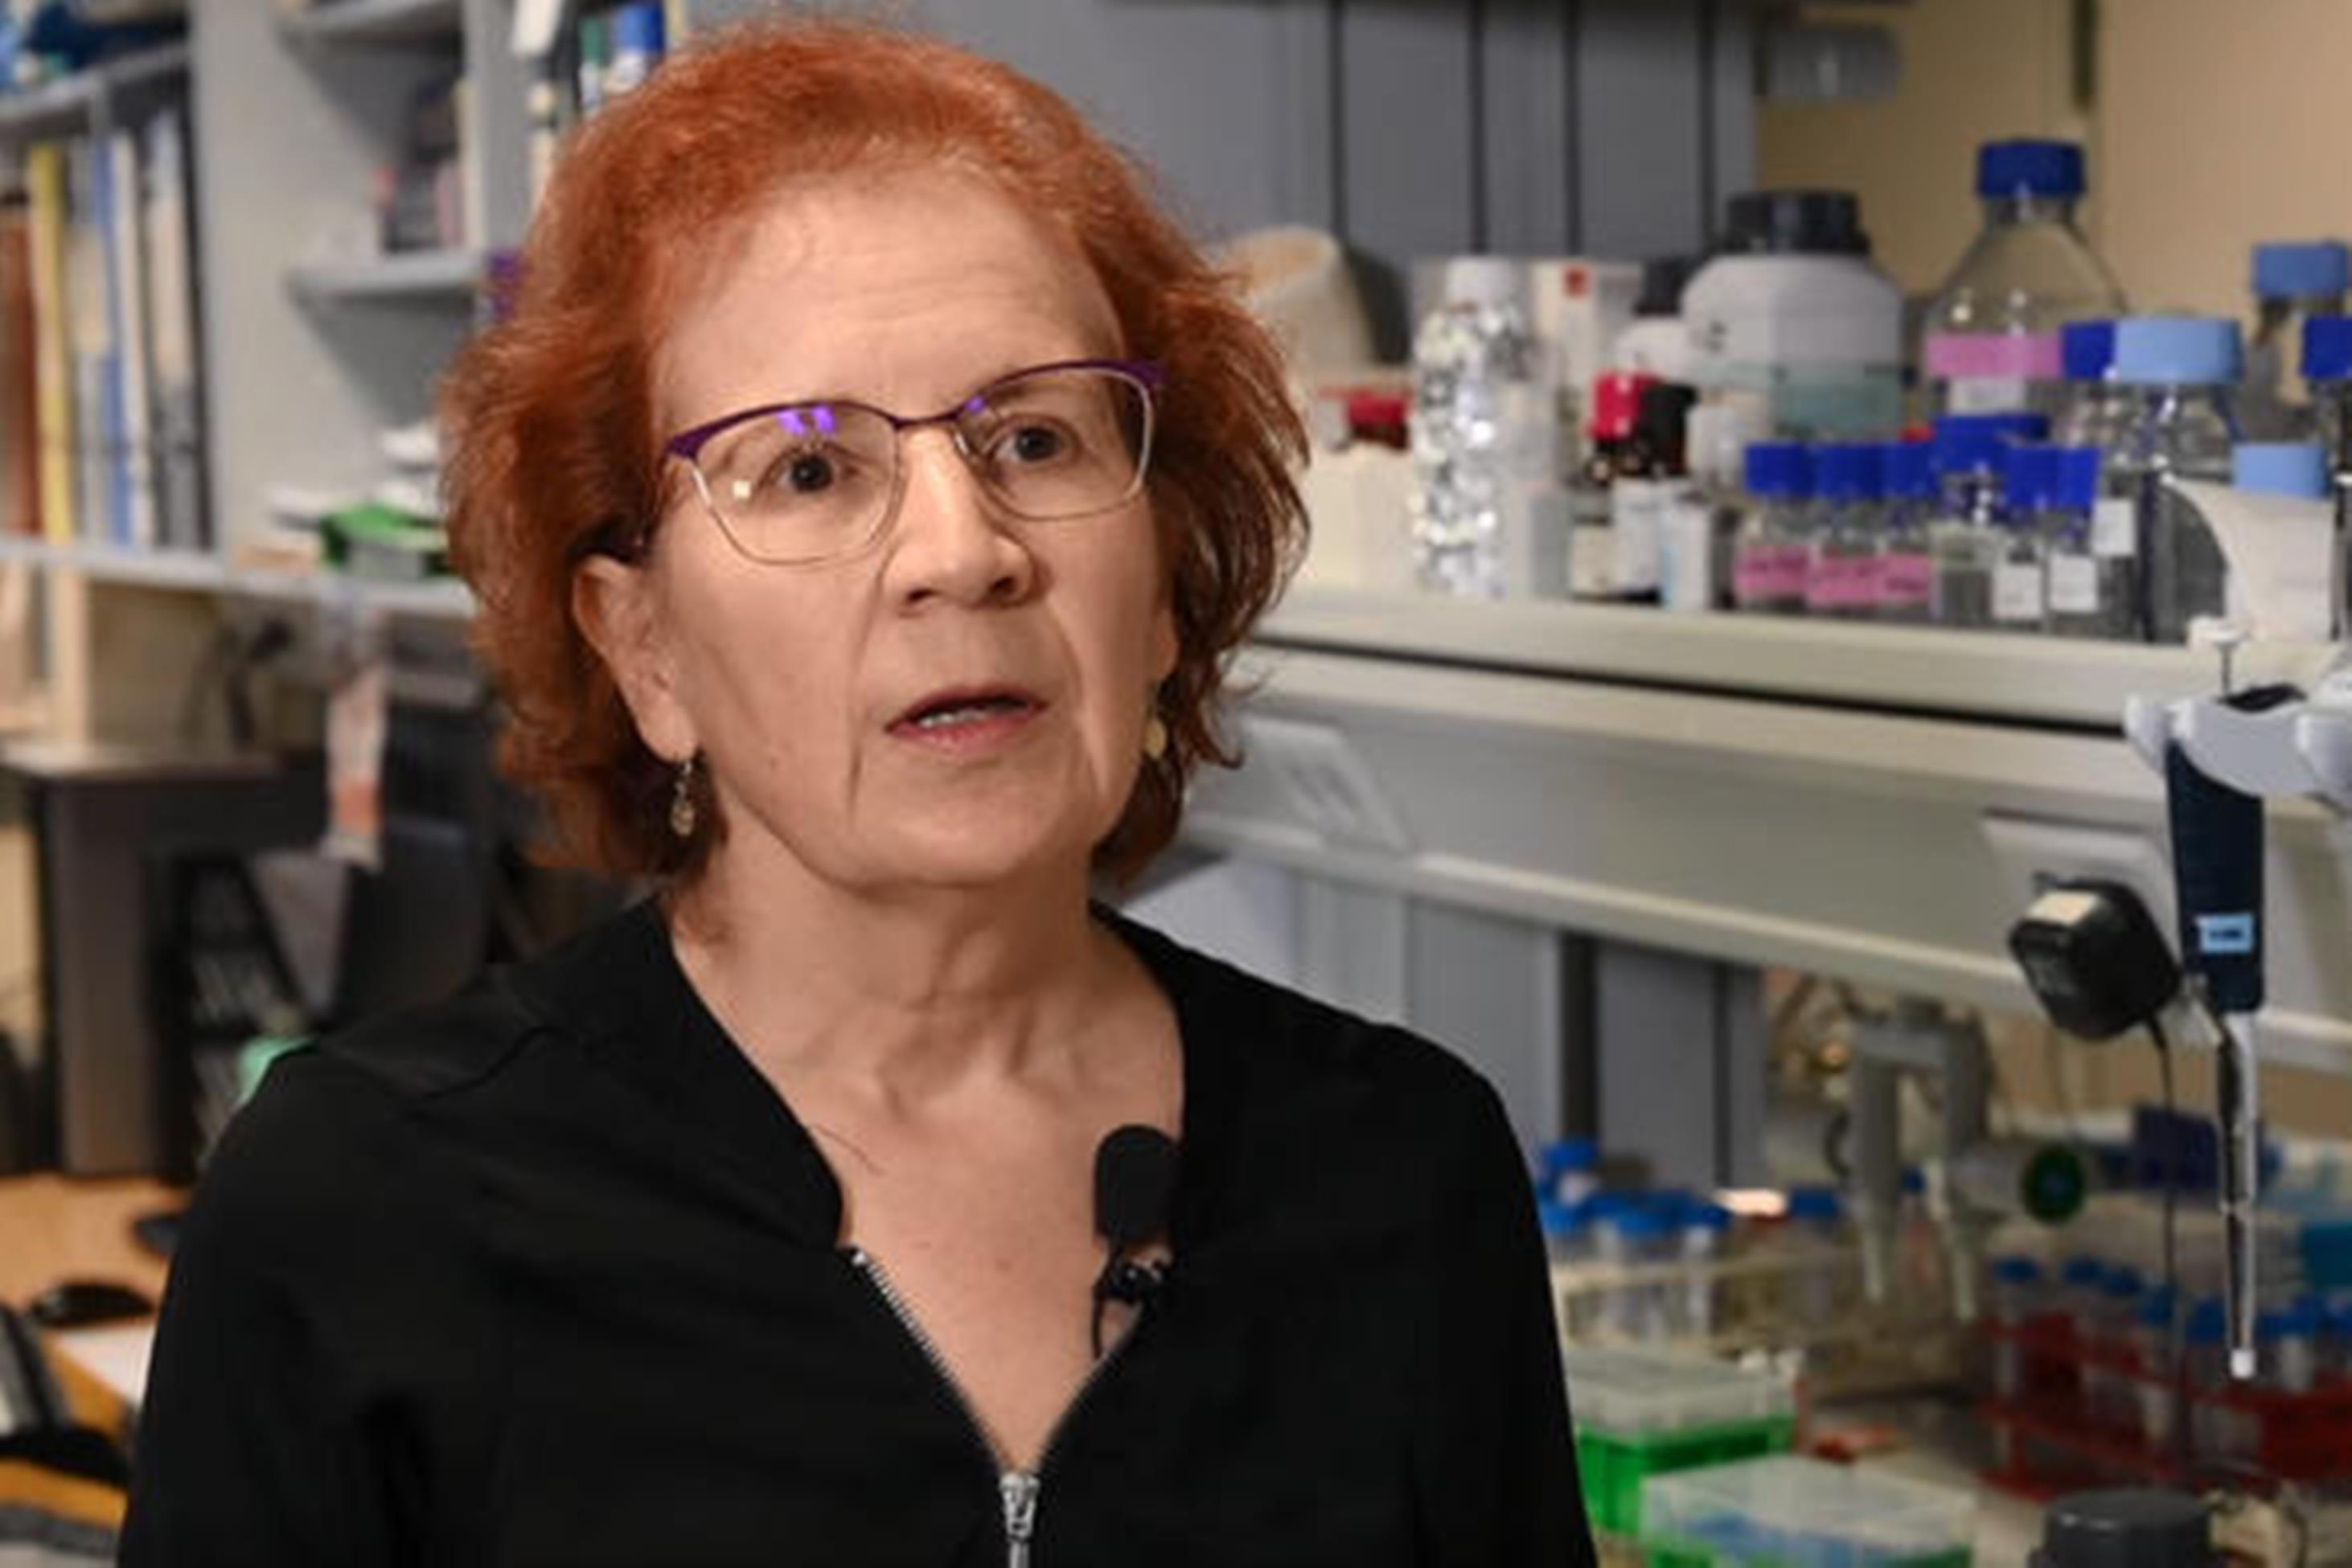  Margarita del Val alerta contra los "experimentos" de mezclar vacunas anti covid-19 distintas